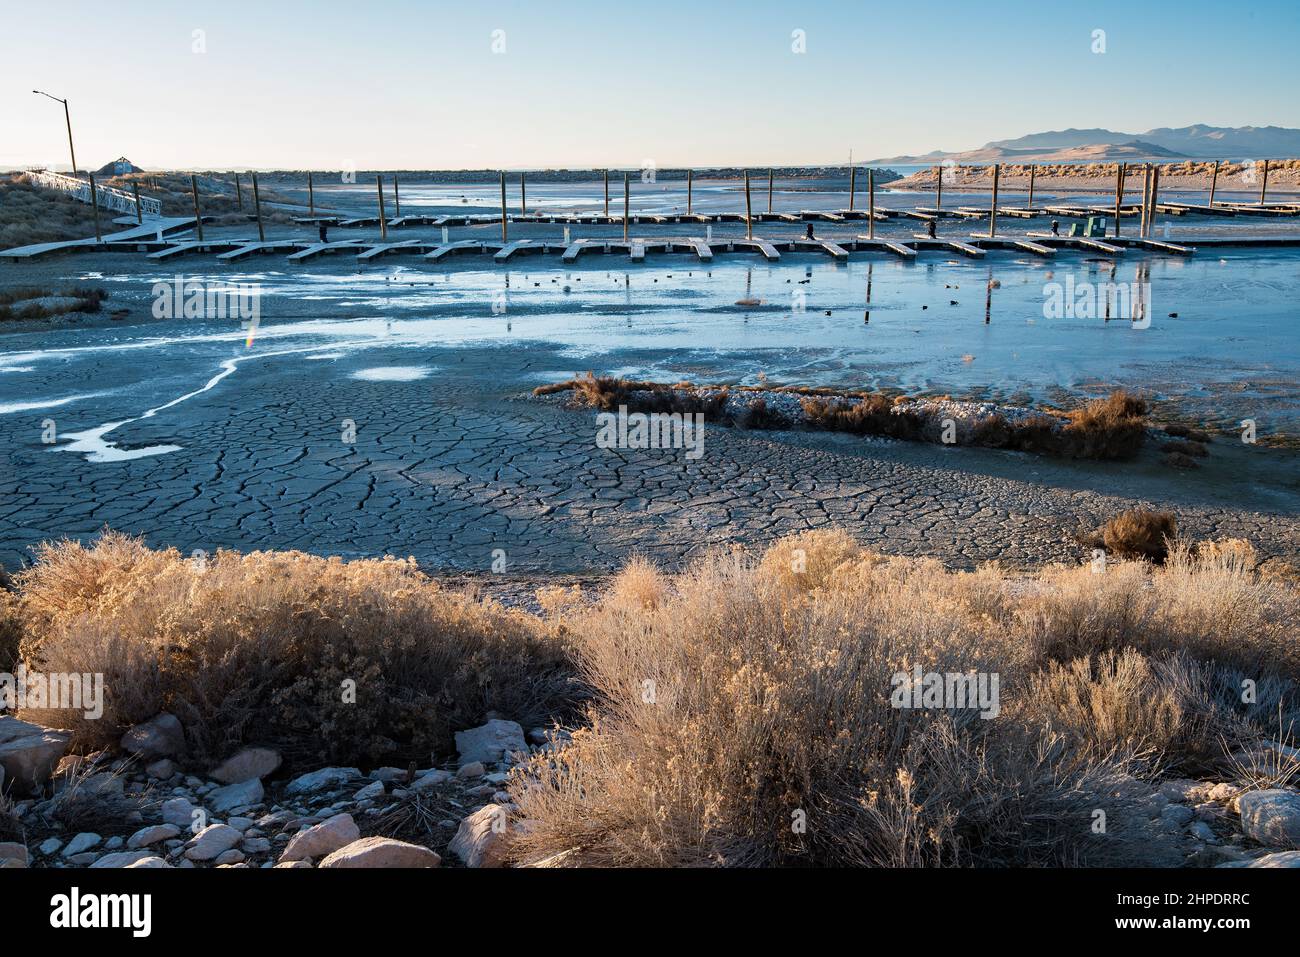 La barca abbandonata ormeggia sul Great Salt Lake. La siccità e le pratiche di irrigazione povere hanno accelerato l'evaporazione. Questo enorme lago sta scomparendo. Foto Stock